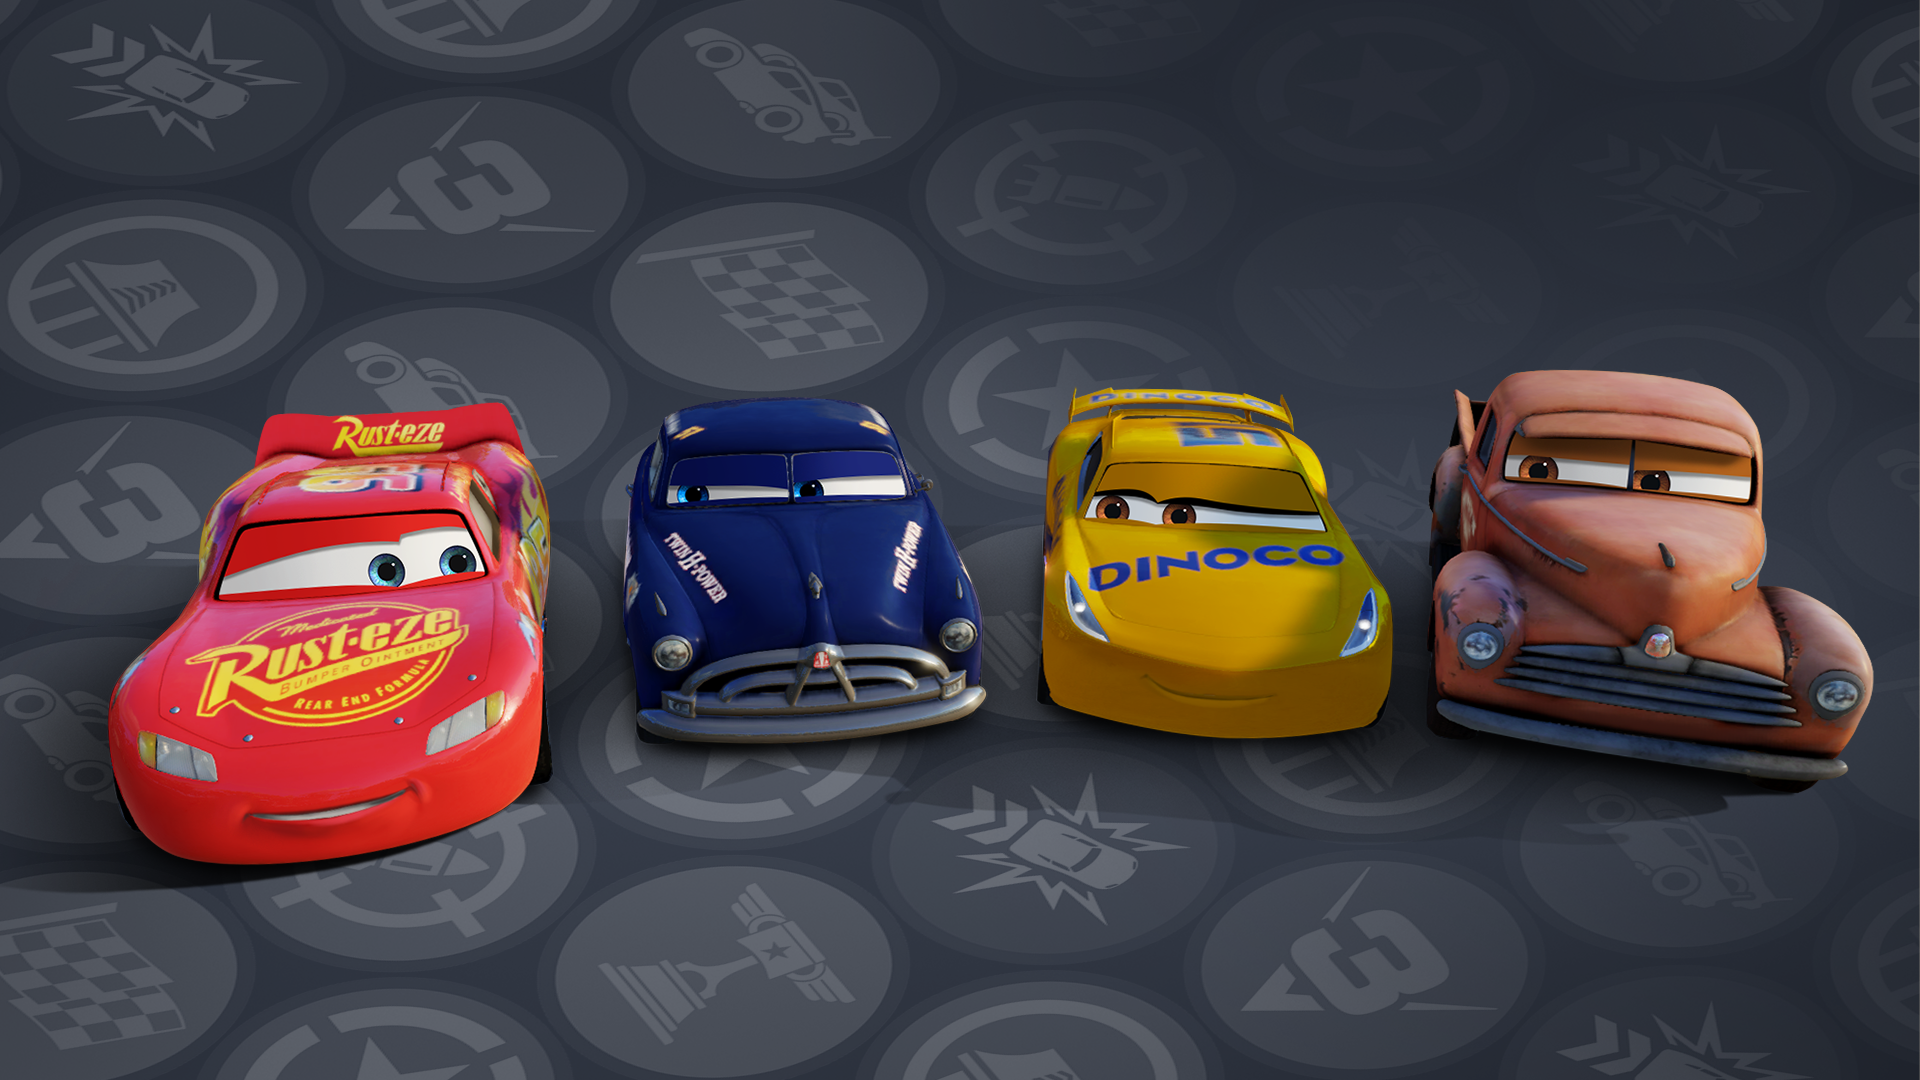 Cars 3 8. Cars 3: Driven to win. Cars 3 Driven to win персонажи. Cars 3 Driven to win Xbox 360. Cars 3 ps4.